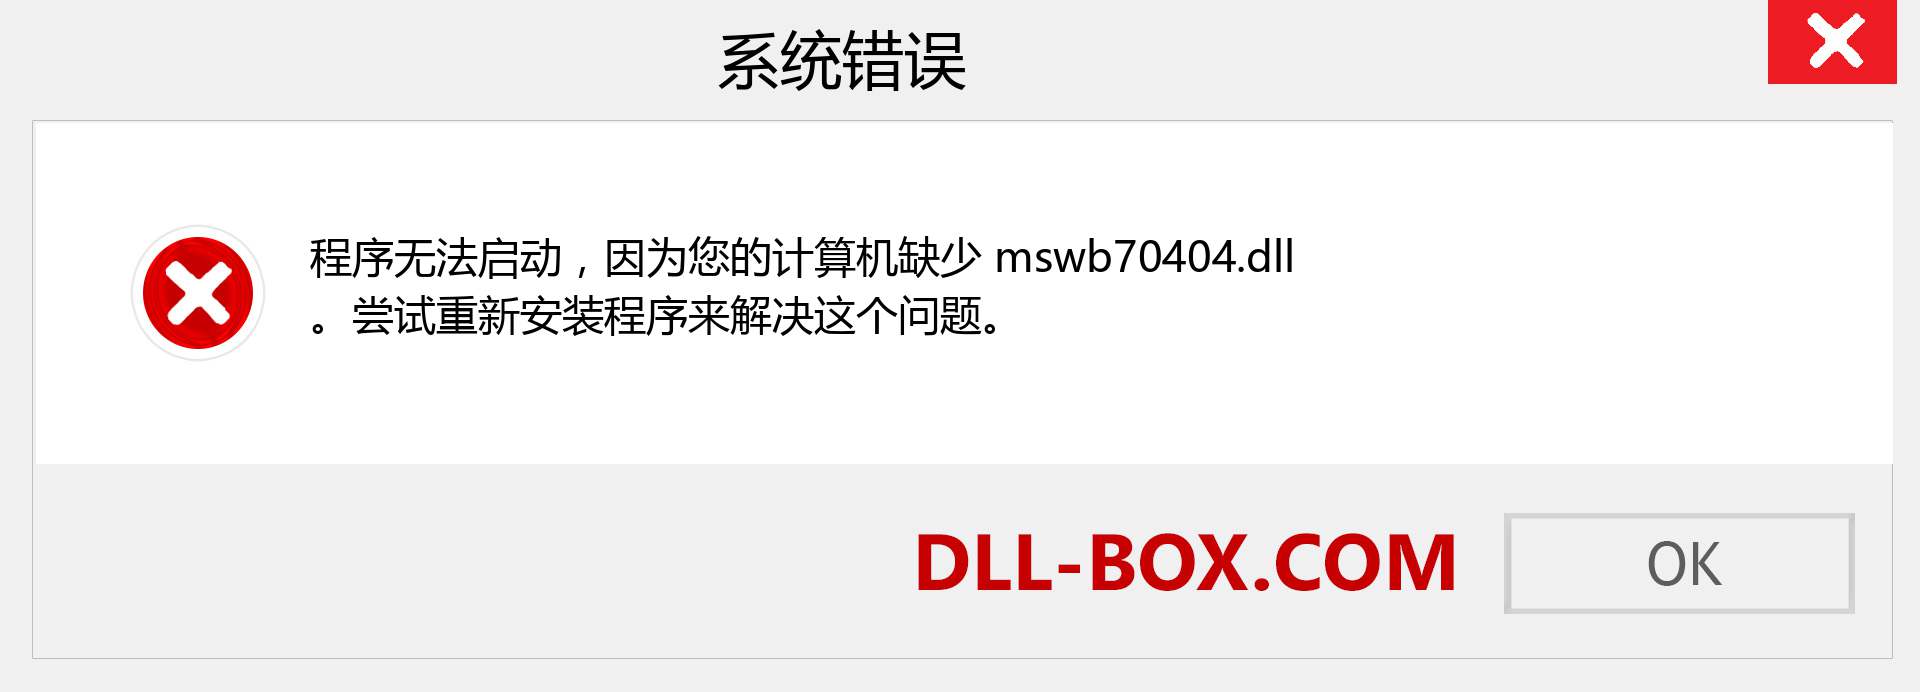 mswb70404.dll 文件丢失？。 适用于 Windows 7、8、10 的下载 - 修复 Windows、照片、图像上的 mswb70404 dll 丢失错误